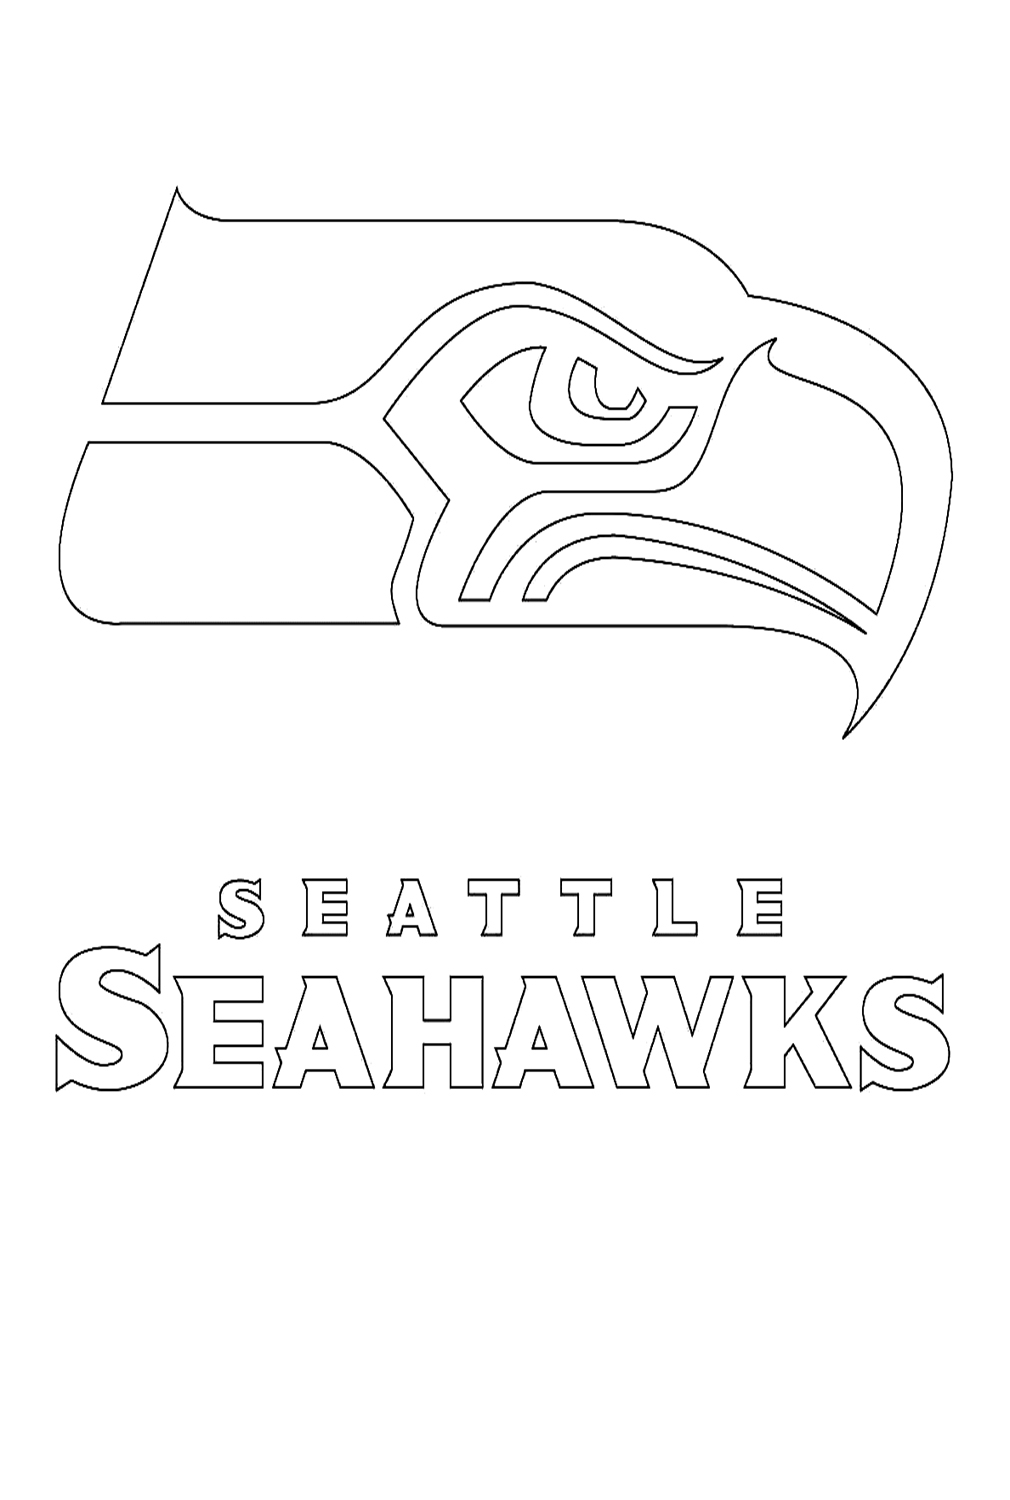 شعار سياتل سي هوكس من اتحاد كرة القدم الأميركي